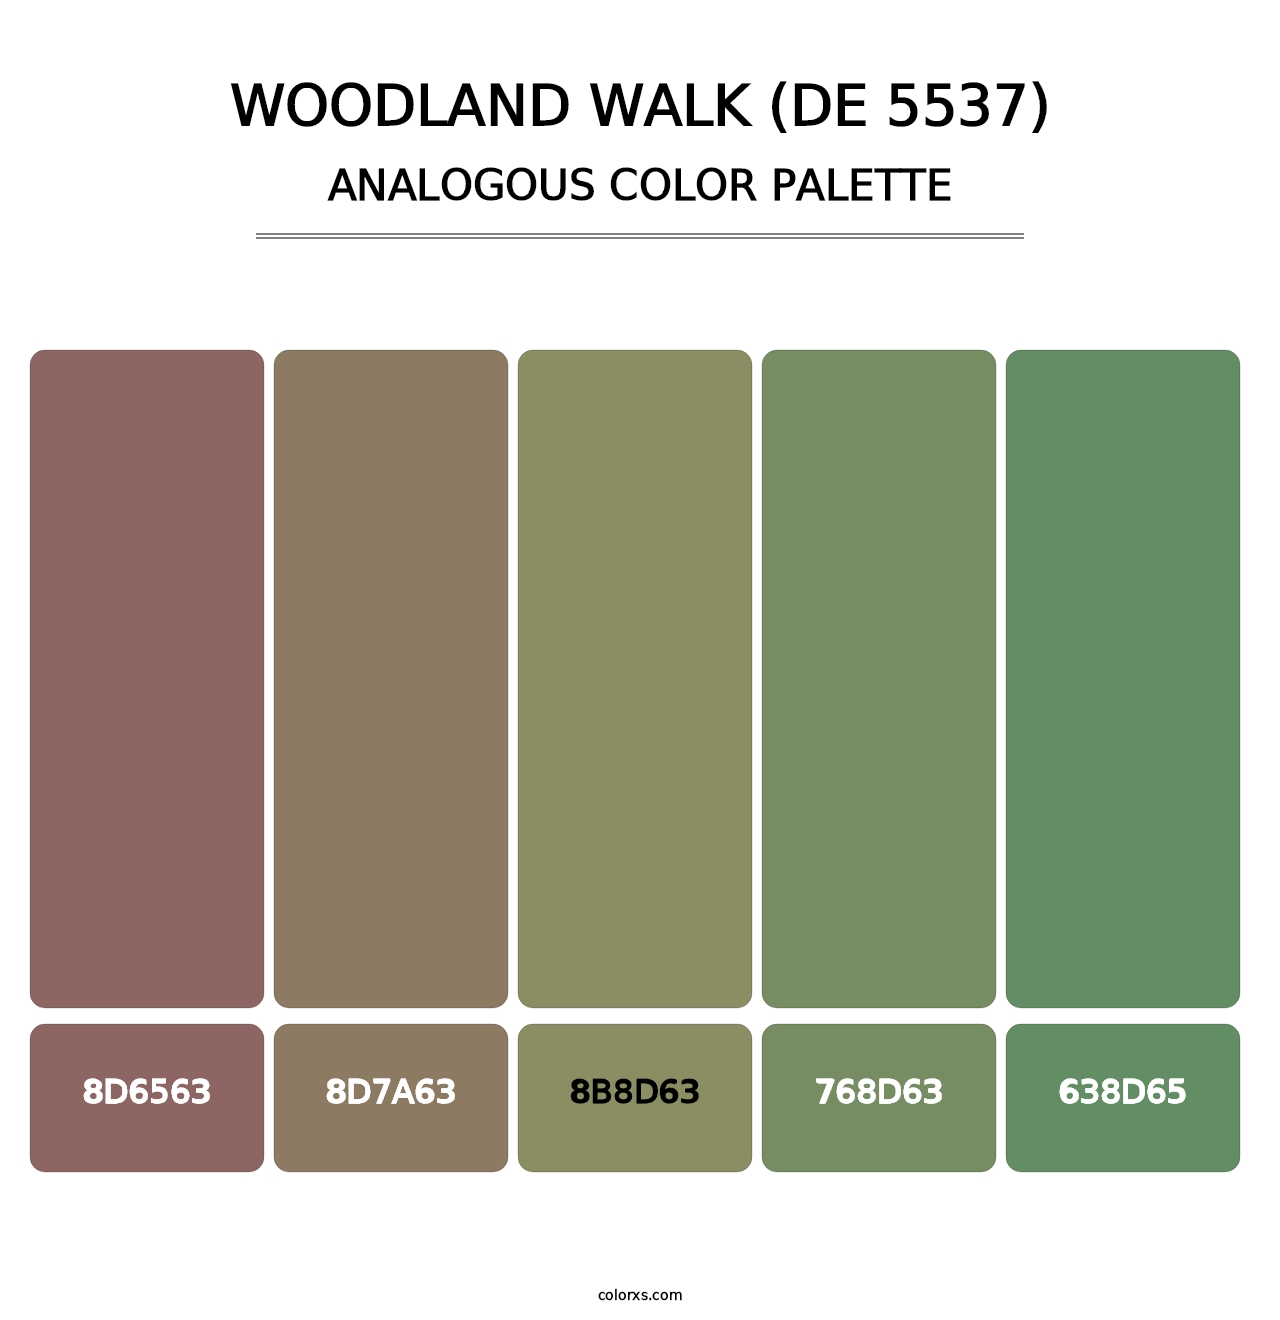 Woodland Walk (DE 5537) - Analogous Color Palette